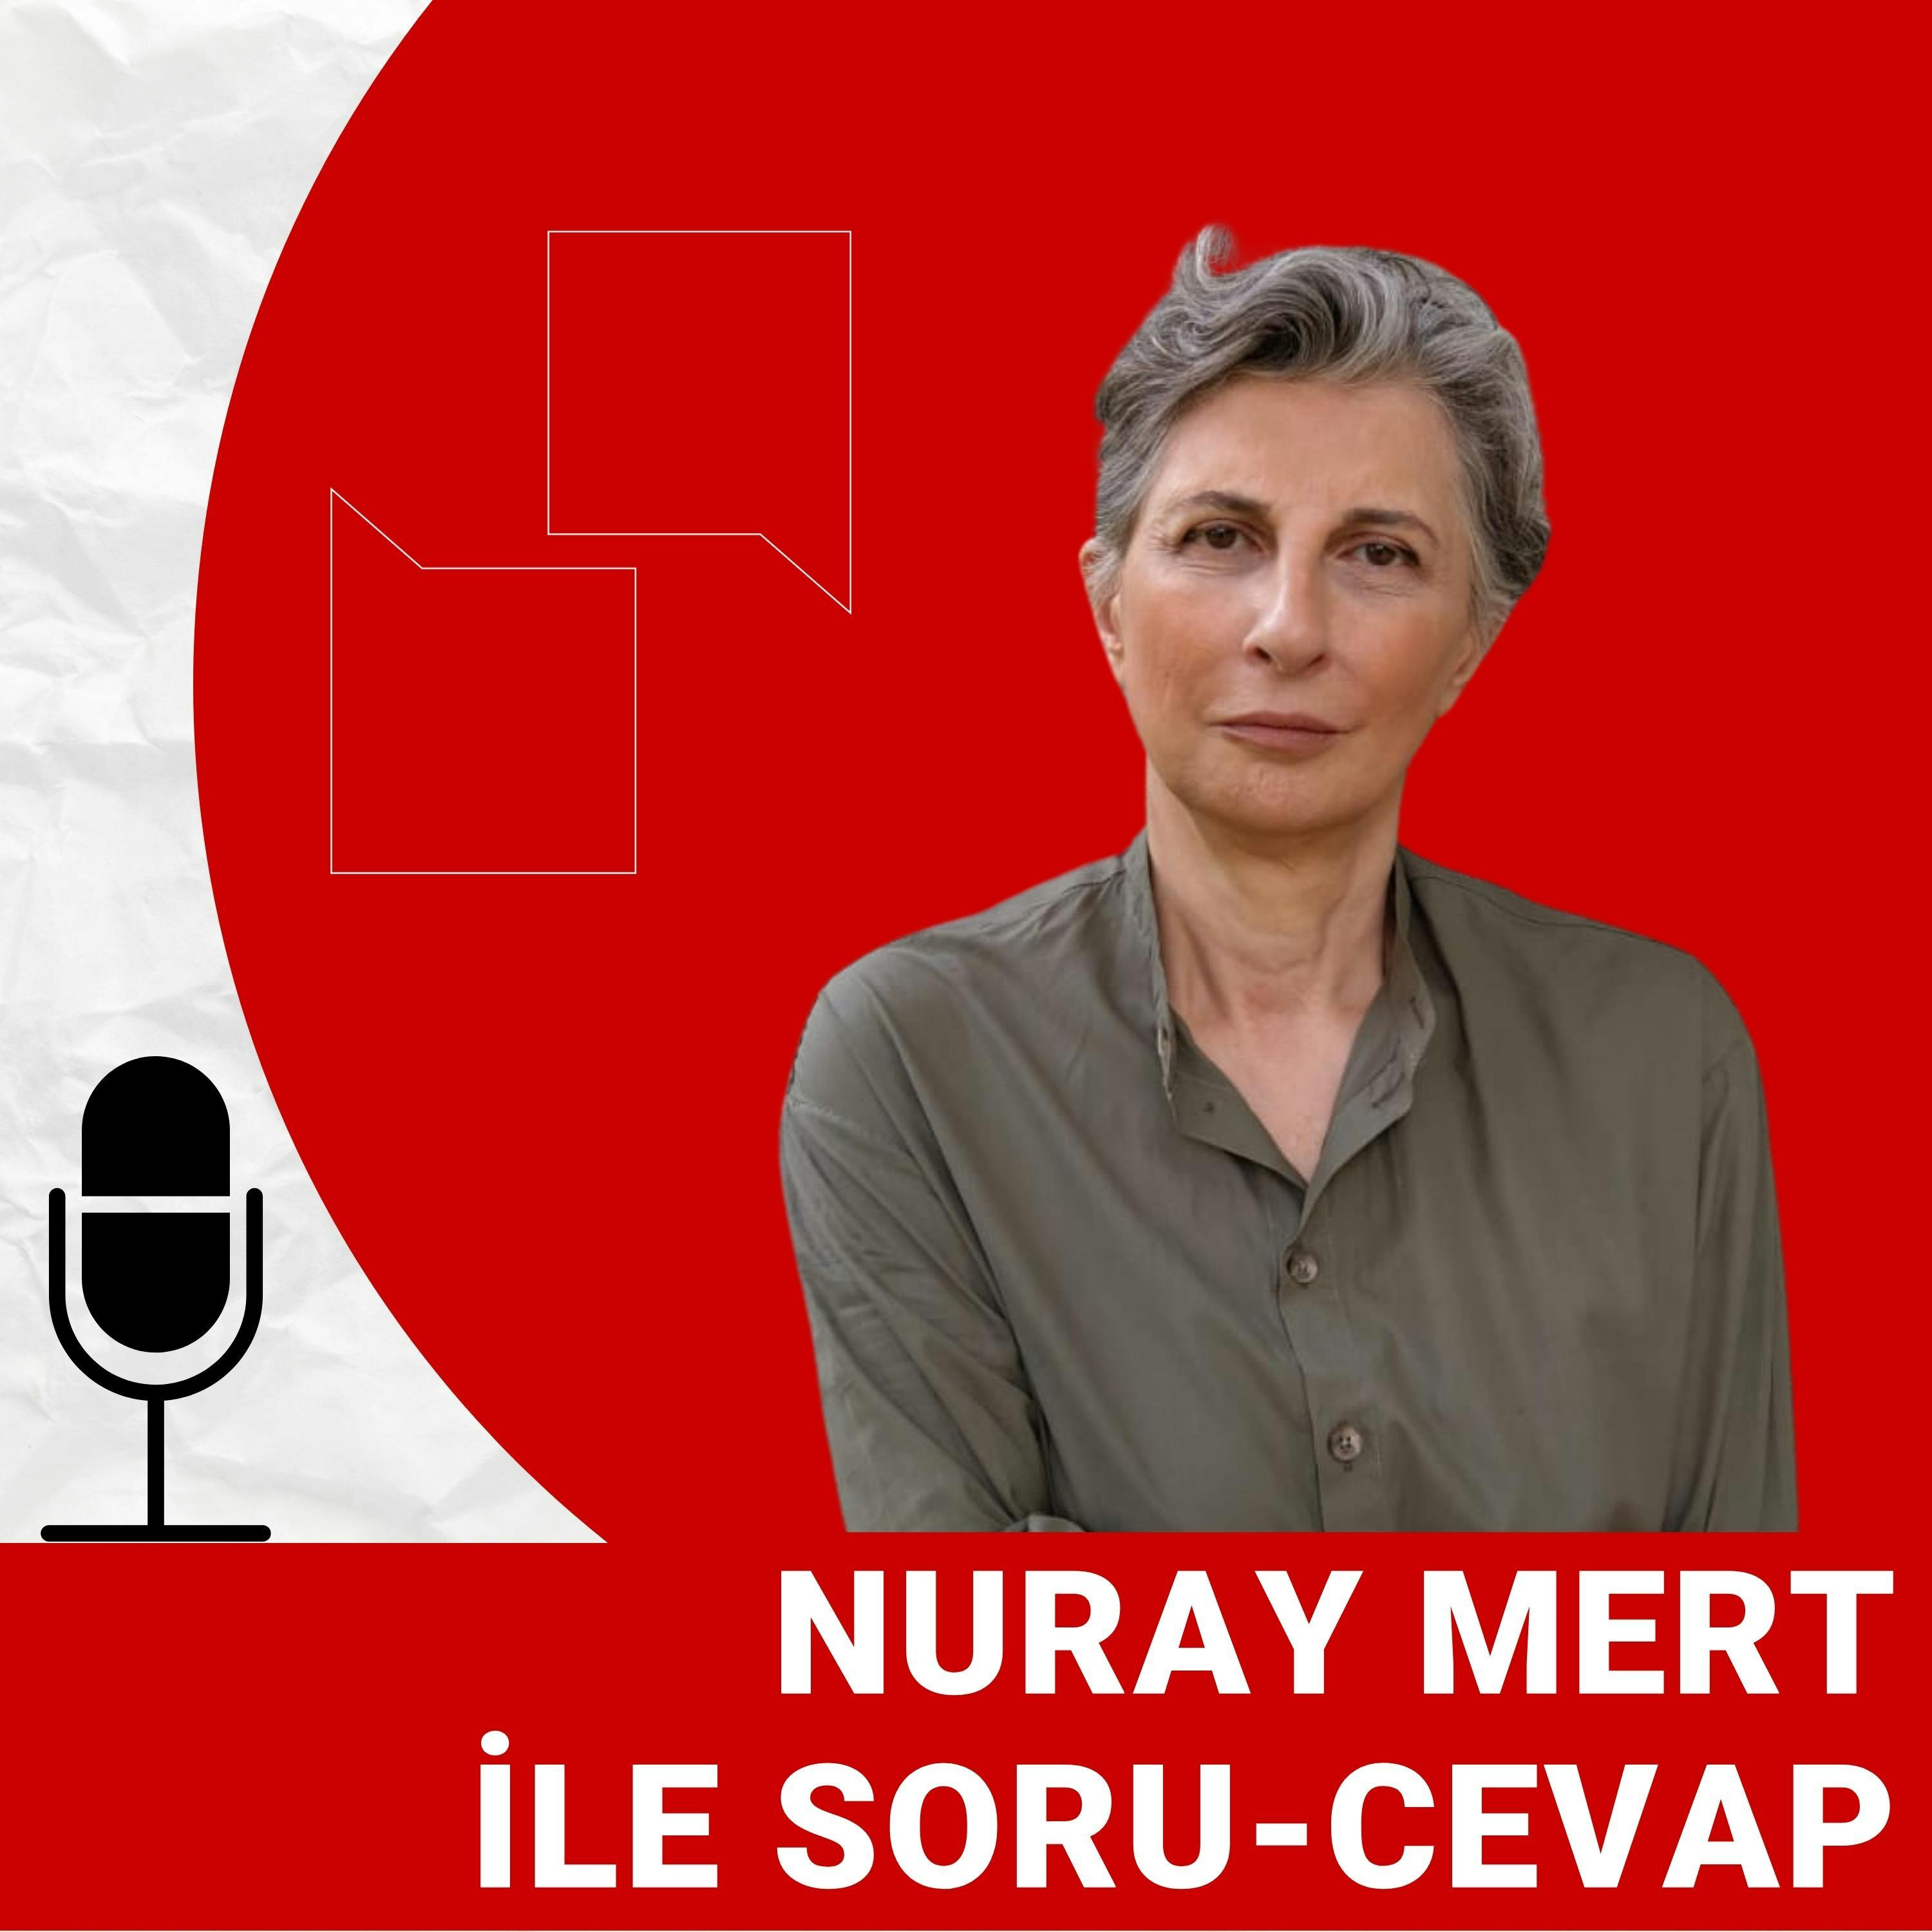 Nuray Mert değerlendiriyor | İstanbul seçimleri: Kararsız seçmen ne yapmalı?